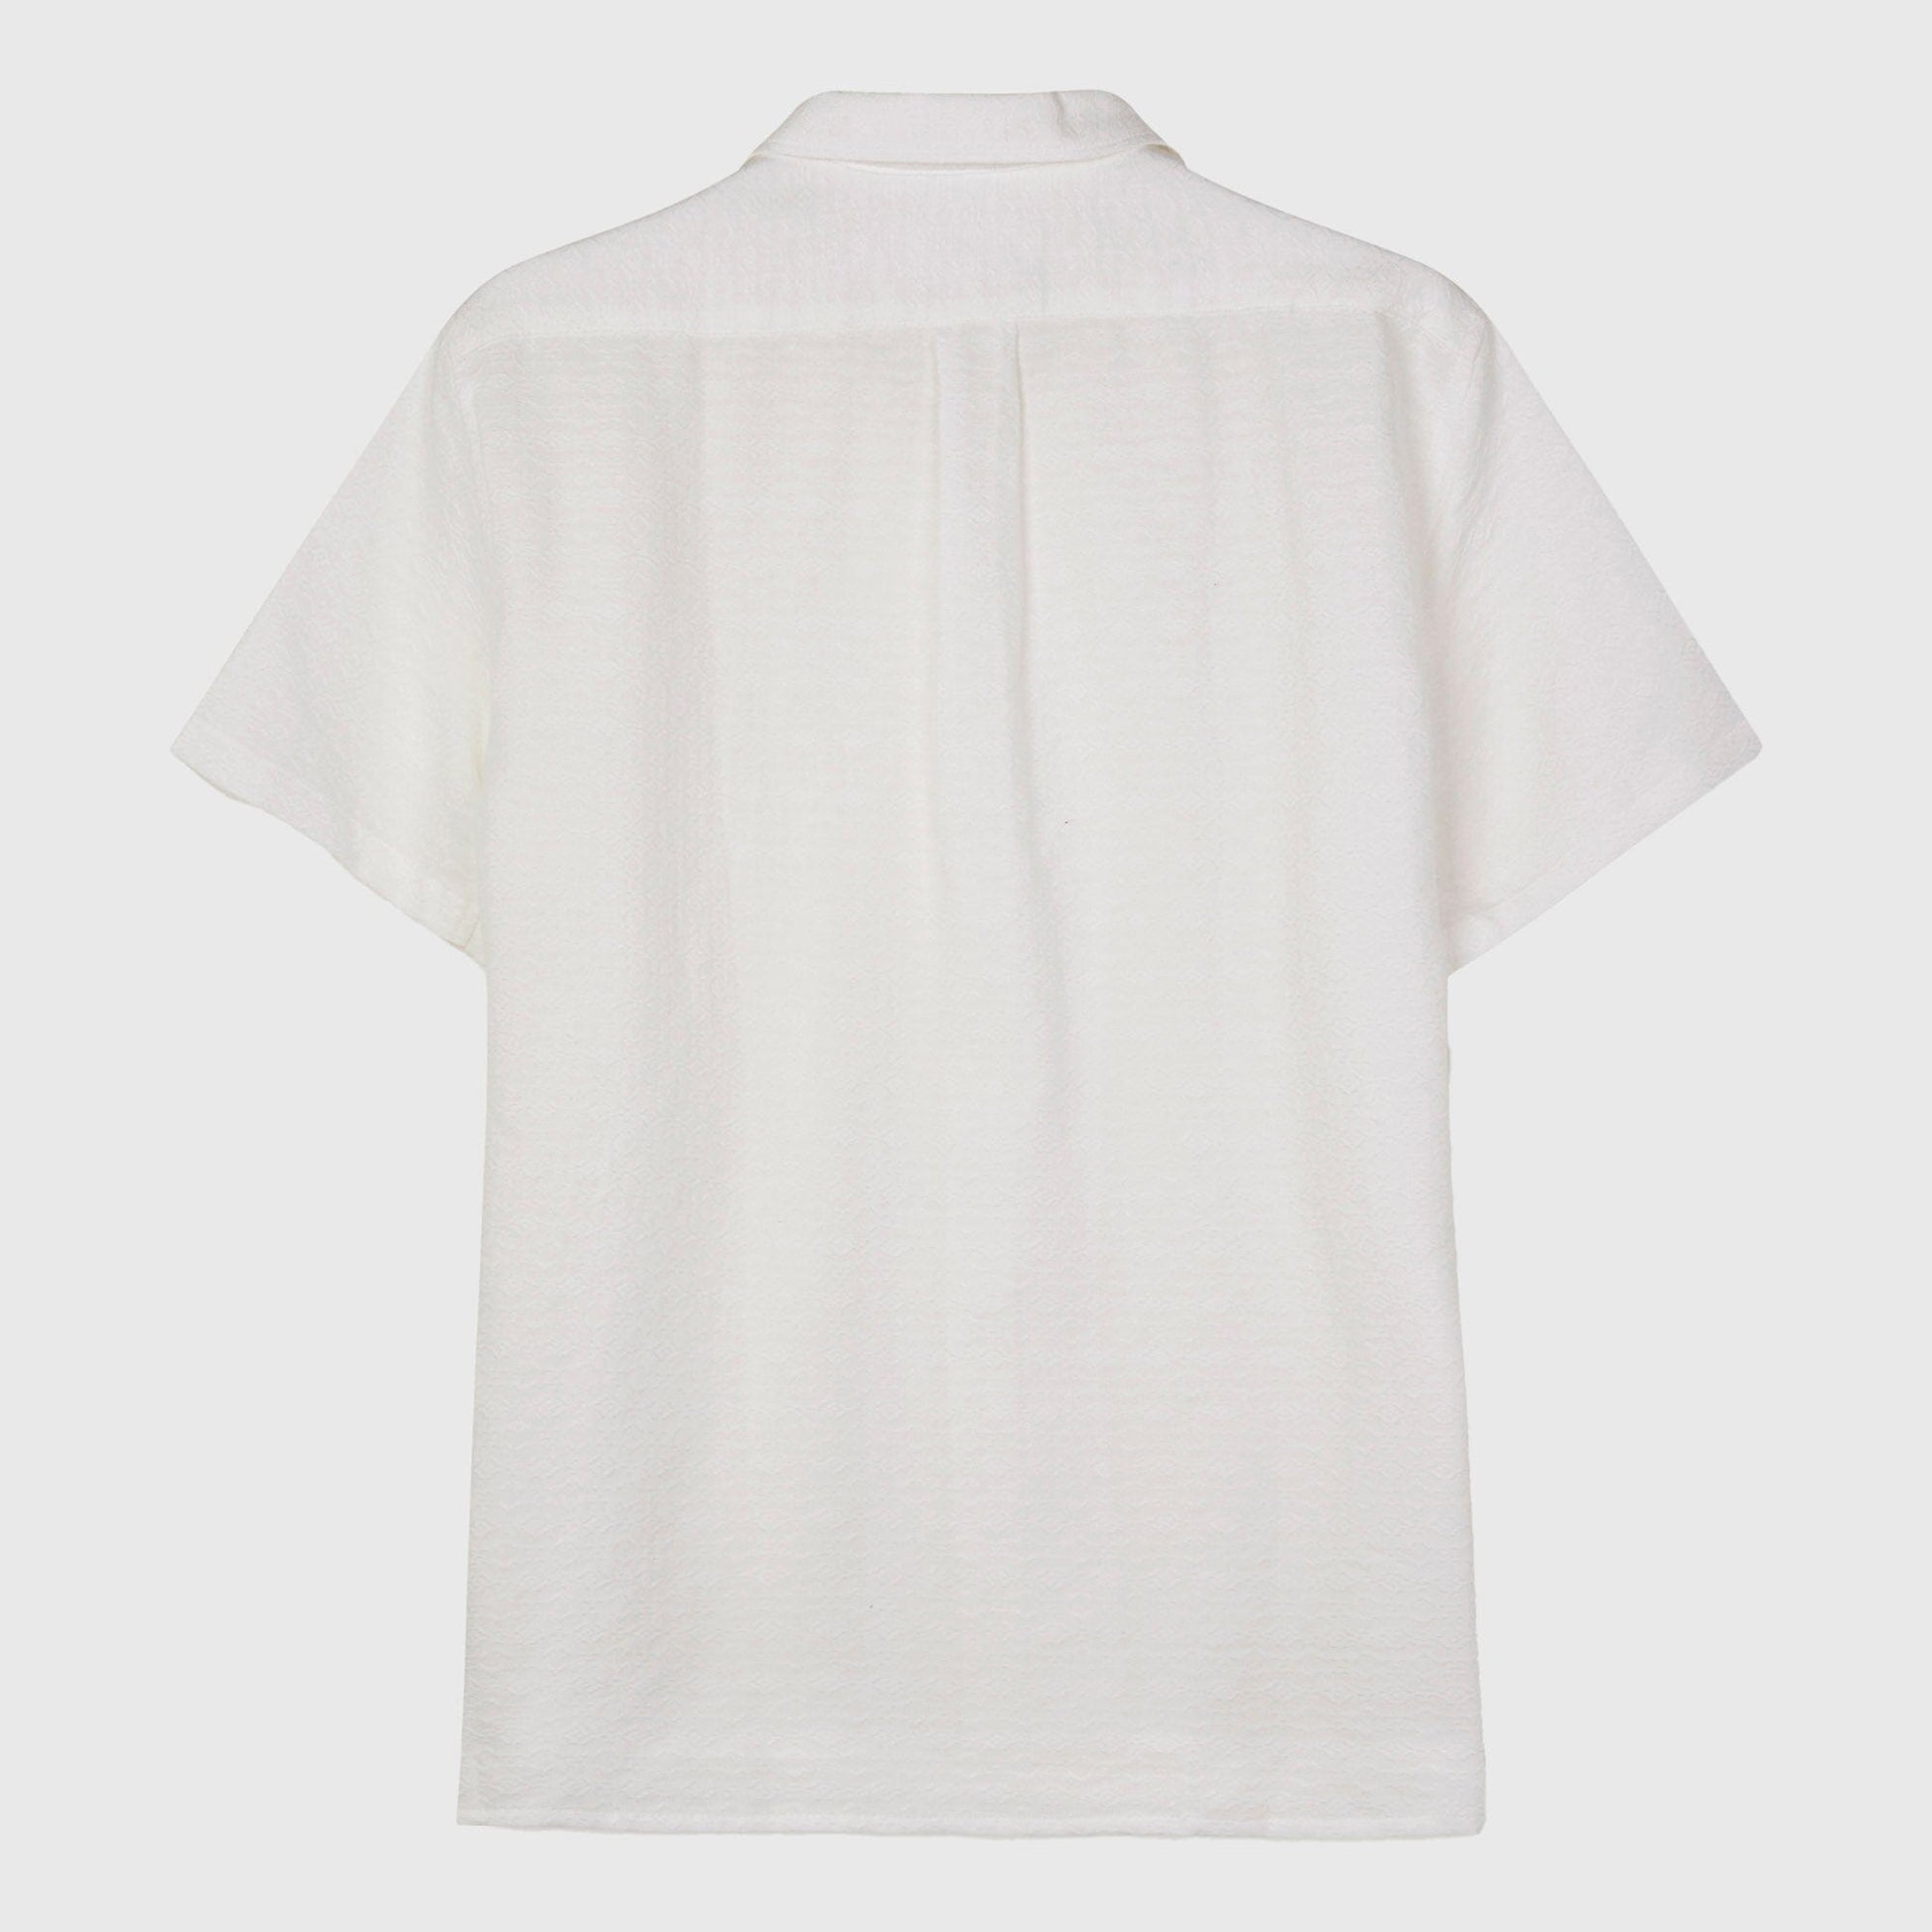 Libertine-Libertine Cave Shirt - Off White Shirt Libertine-Libertine 